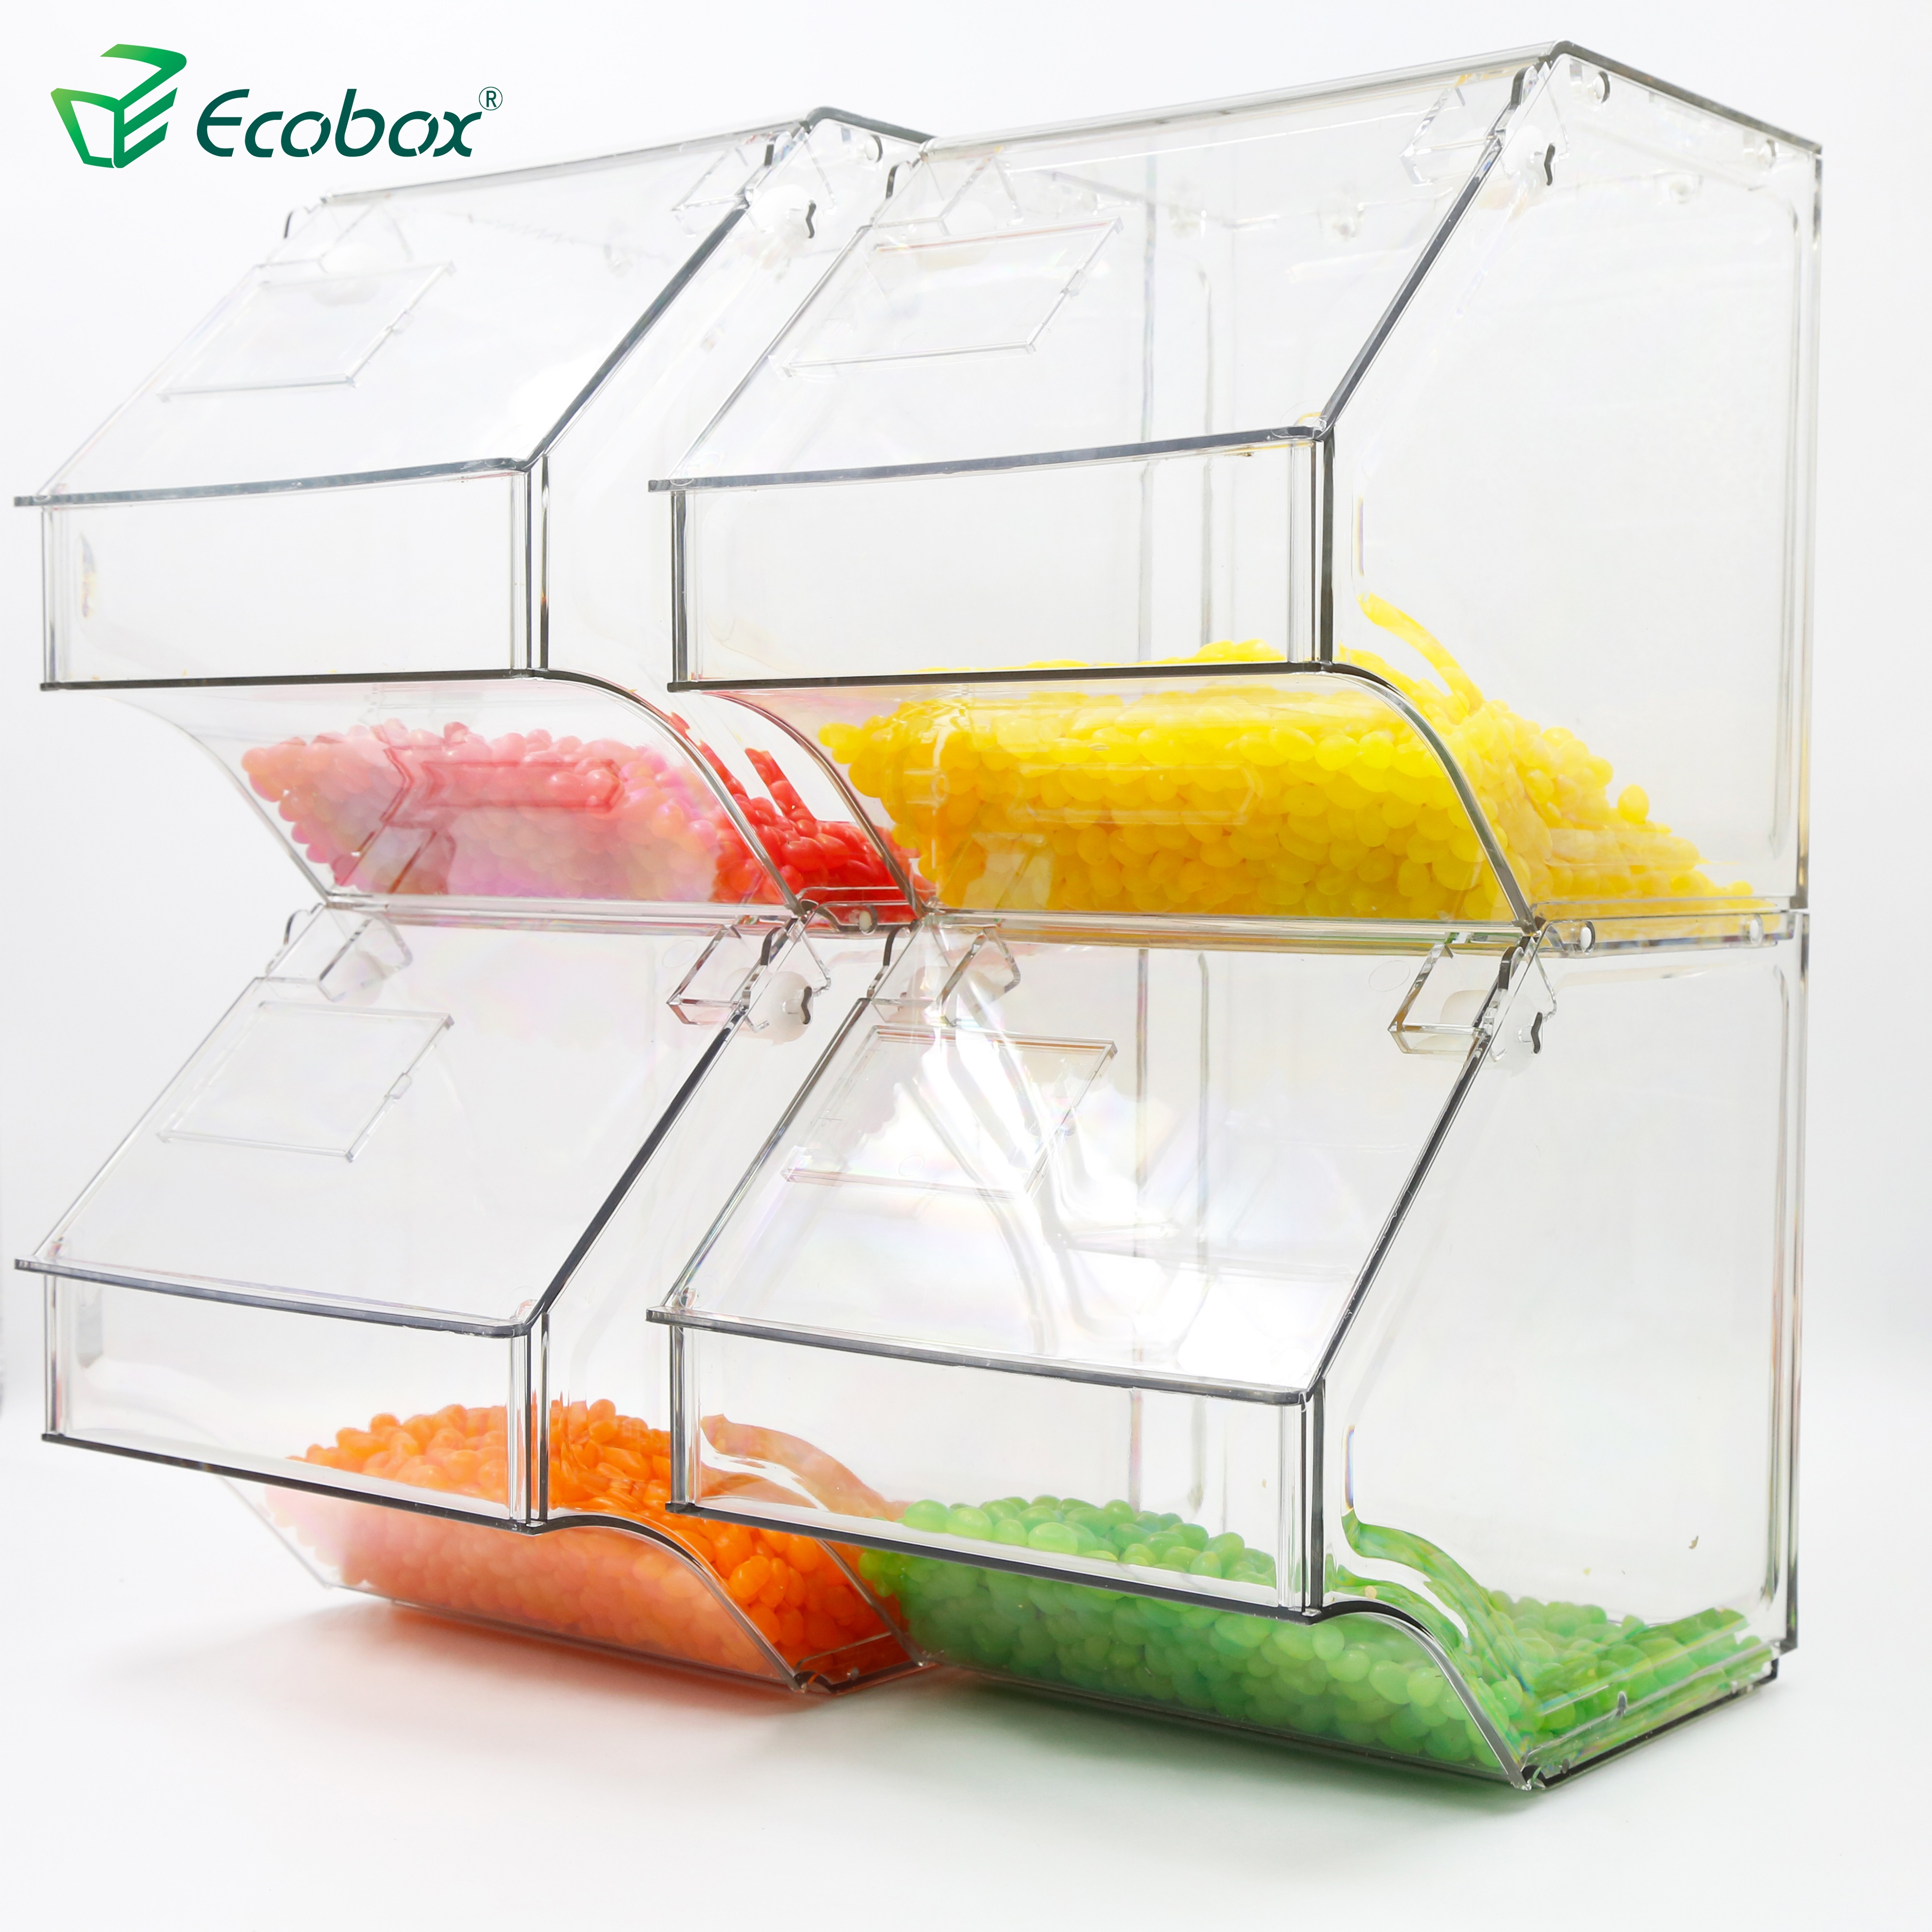 Ecobox SPH-005 bin en vrac